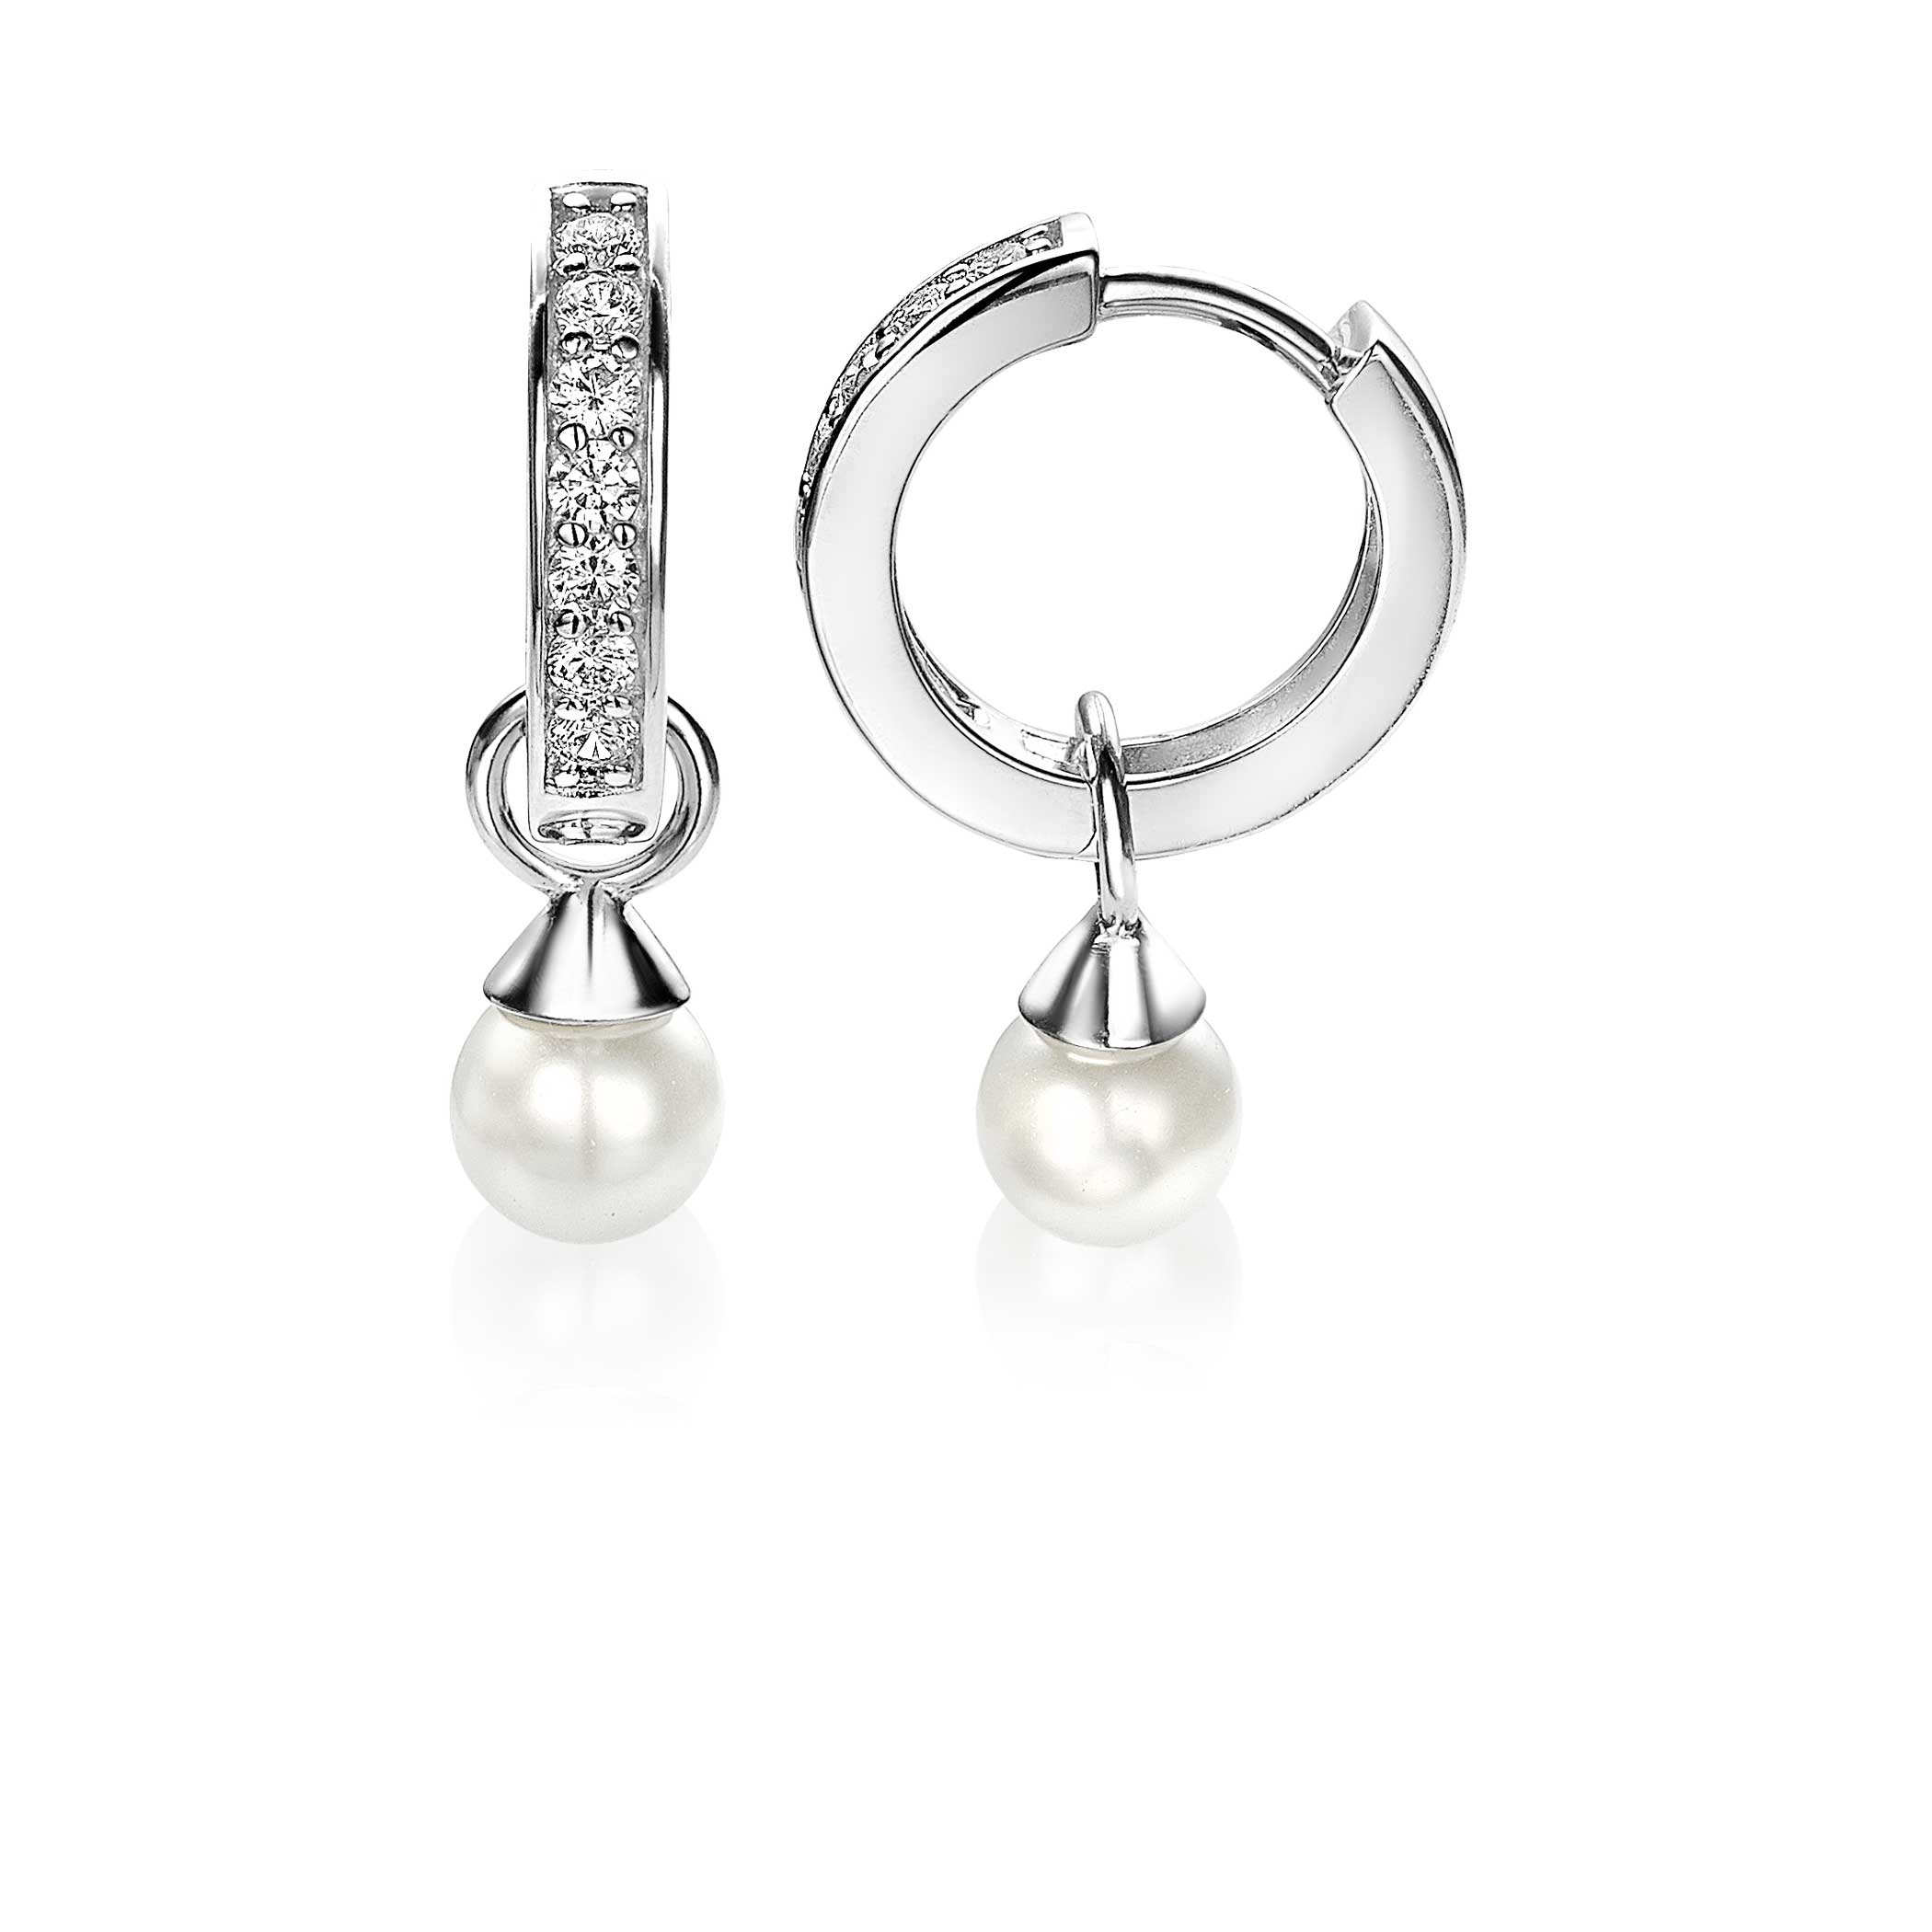 ZINZI Sterling Silver Earrings Pendants Pearl White ZICH1749W (excl. hoop earrings)